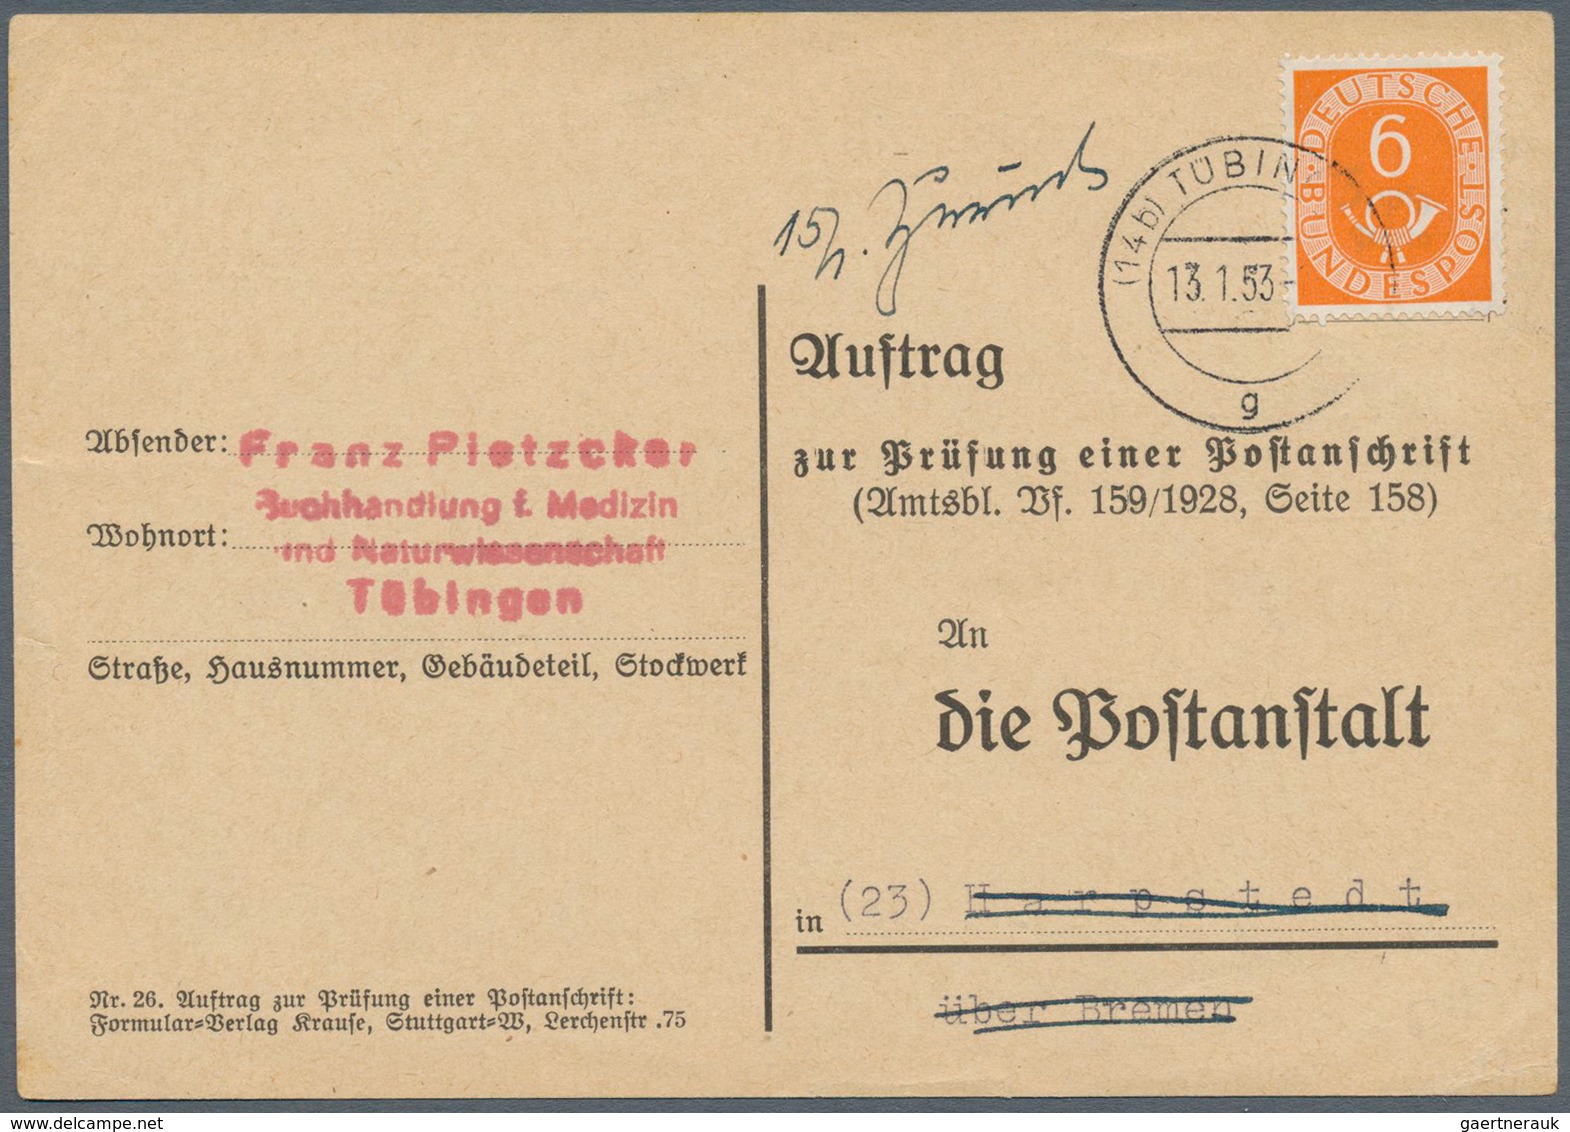 Bundesrepublik Deutschland: 1951, Posthorn, umfangreiche Sammlung von ca 470 Belegen in 6 Alben, dav